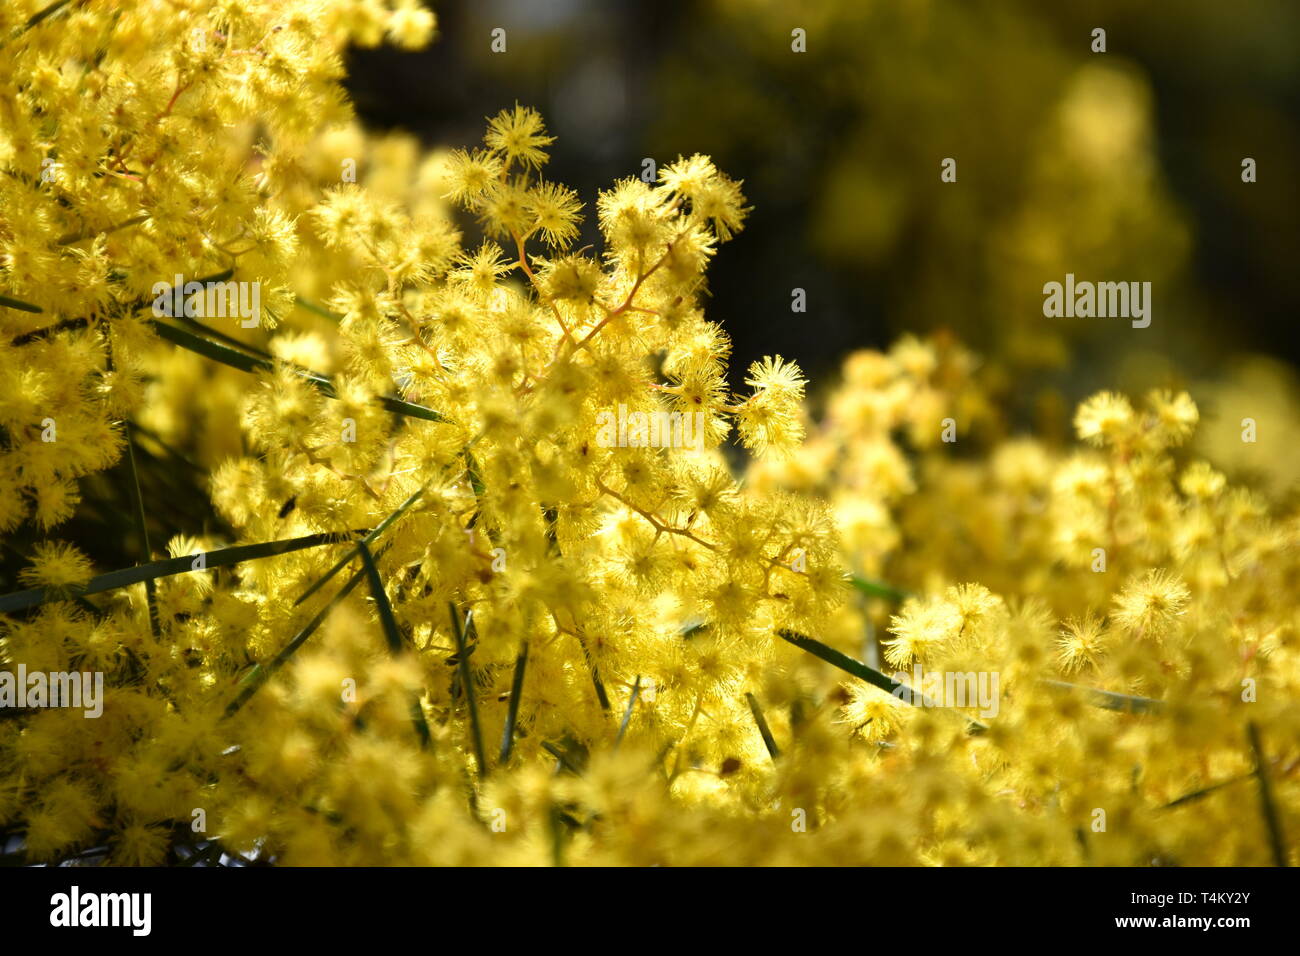 Acacia pycnantha, allgemein bekannt als Golden Wattle, ist Australiens nationale Blume und allgemein als Acacias bekannt. Blüte der Mimosa Tree. Stockfoto